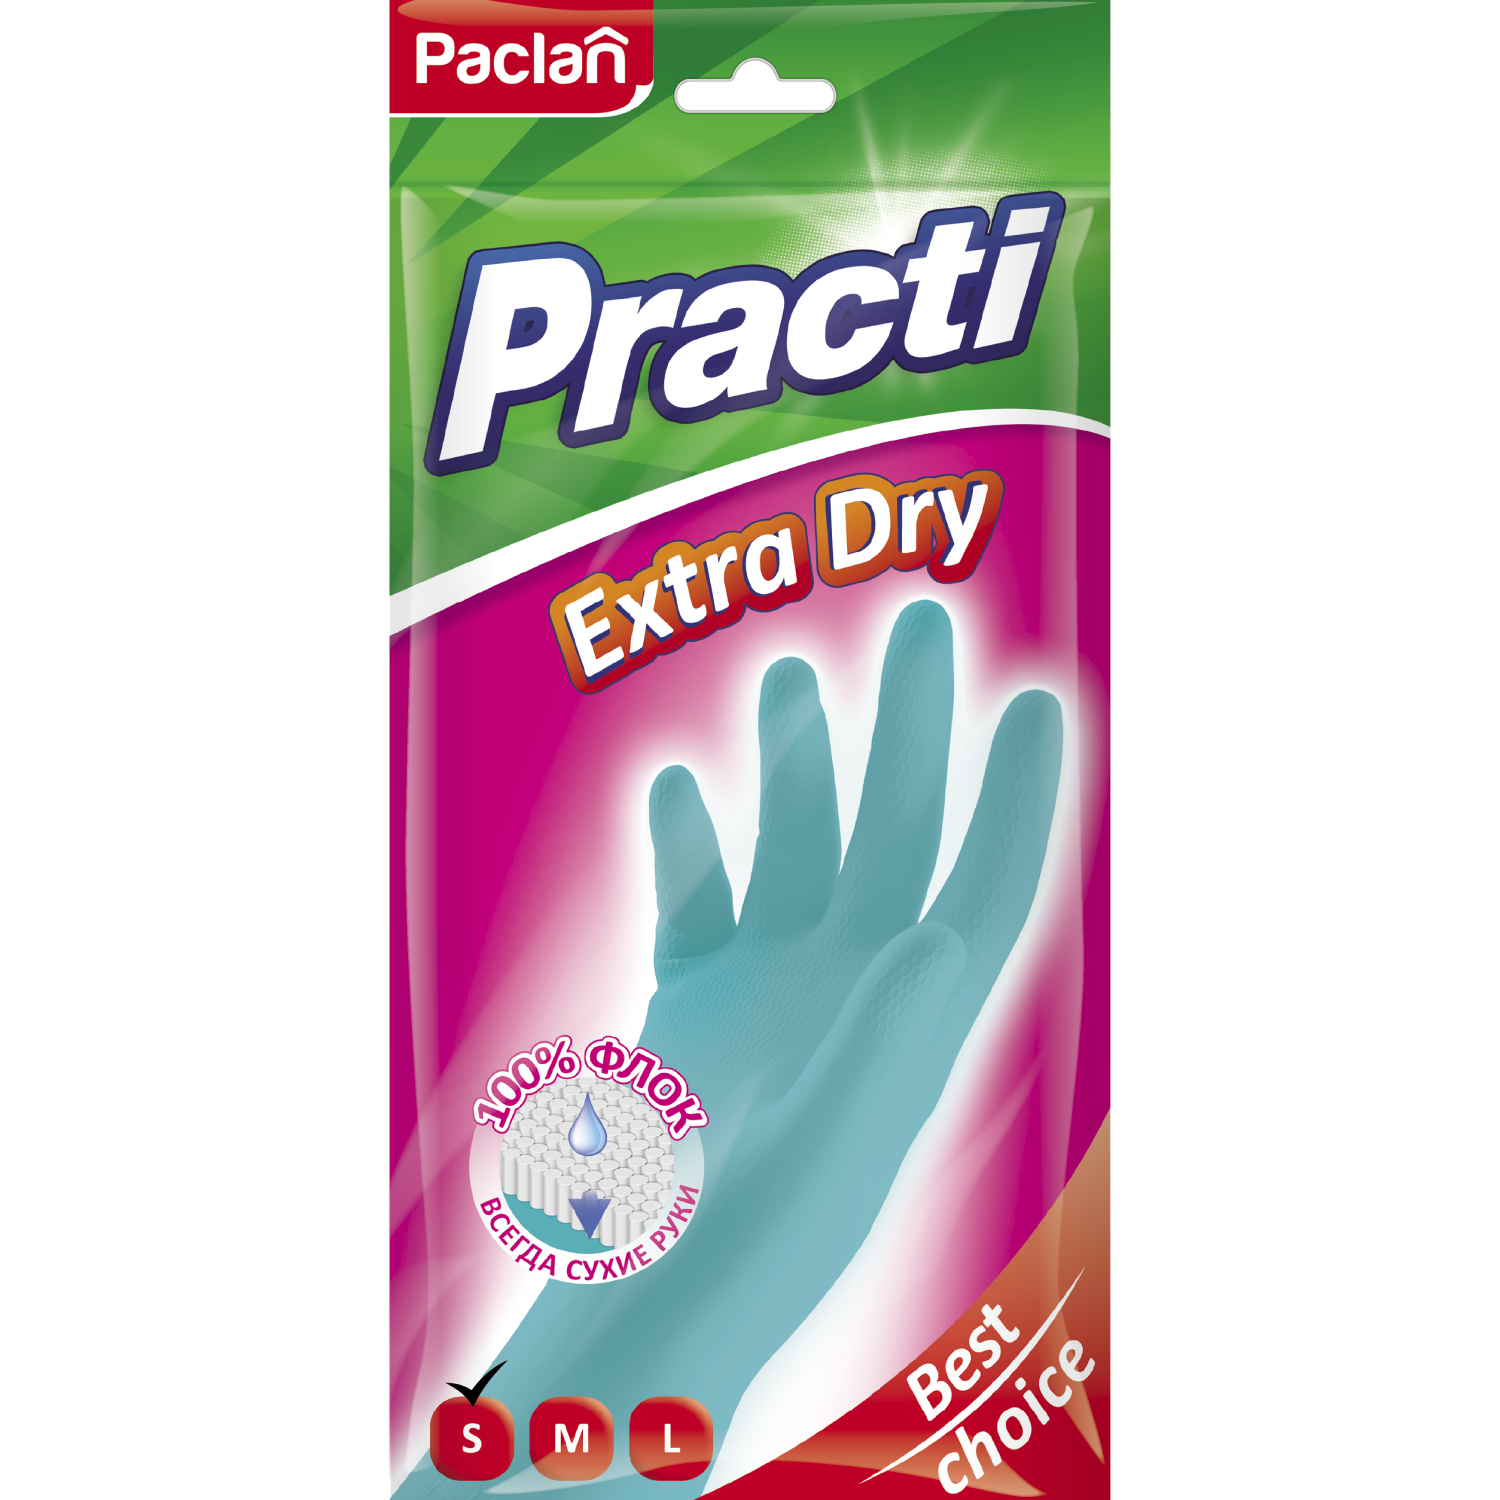 Перчатки резиновые Paclan Extra dry paclan paclan practi extra dry перчатки резиновые